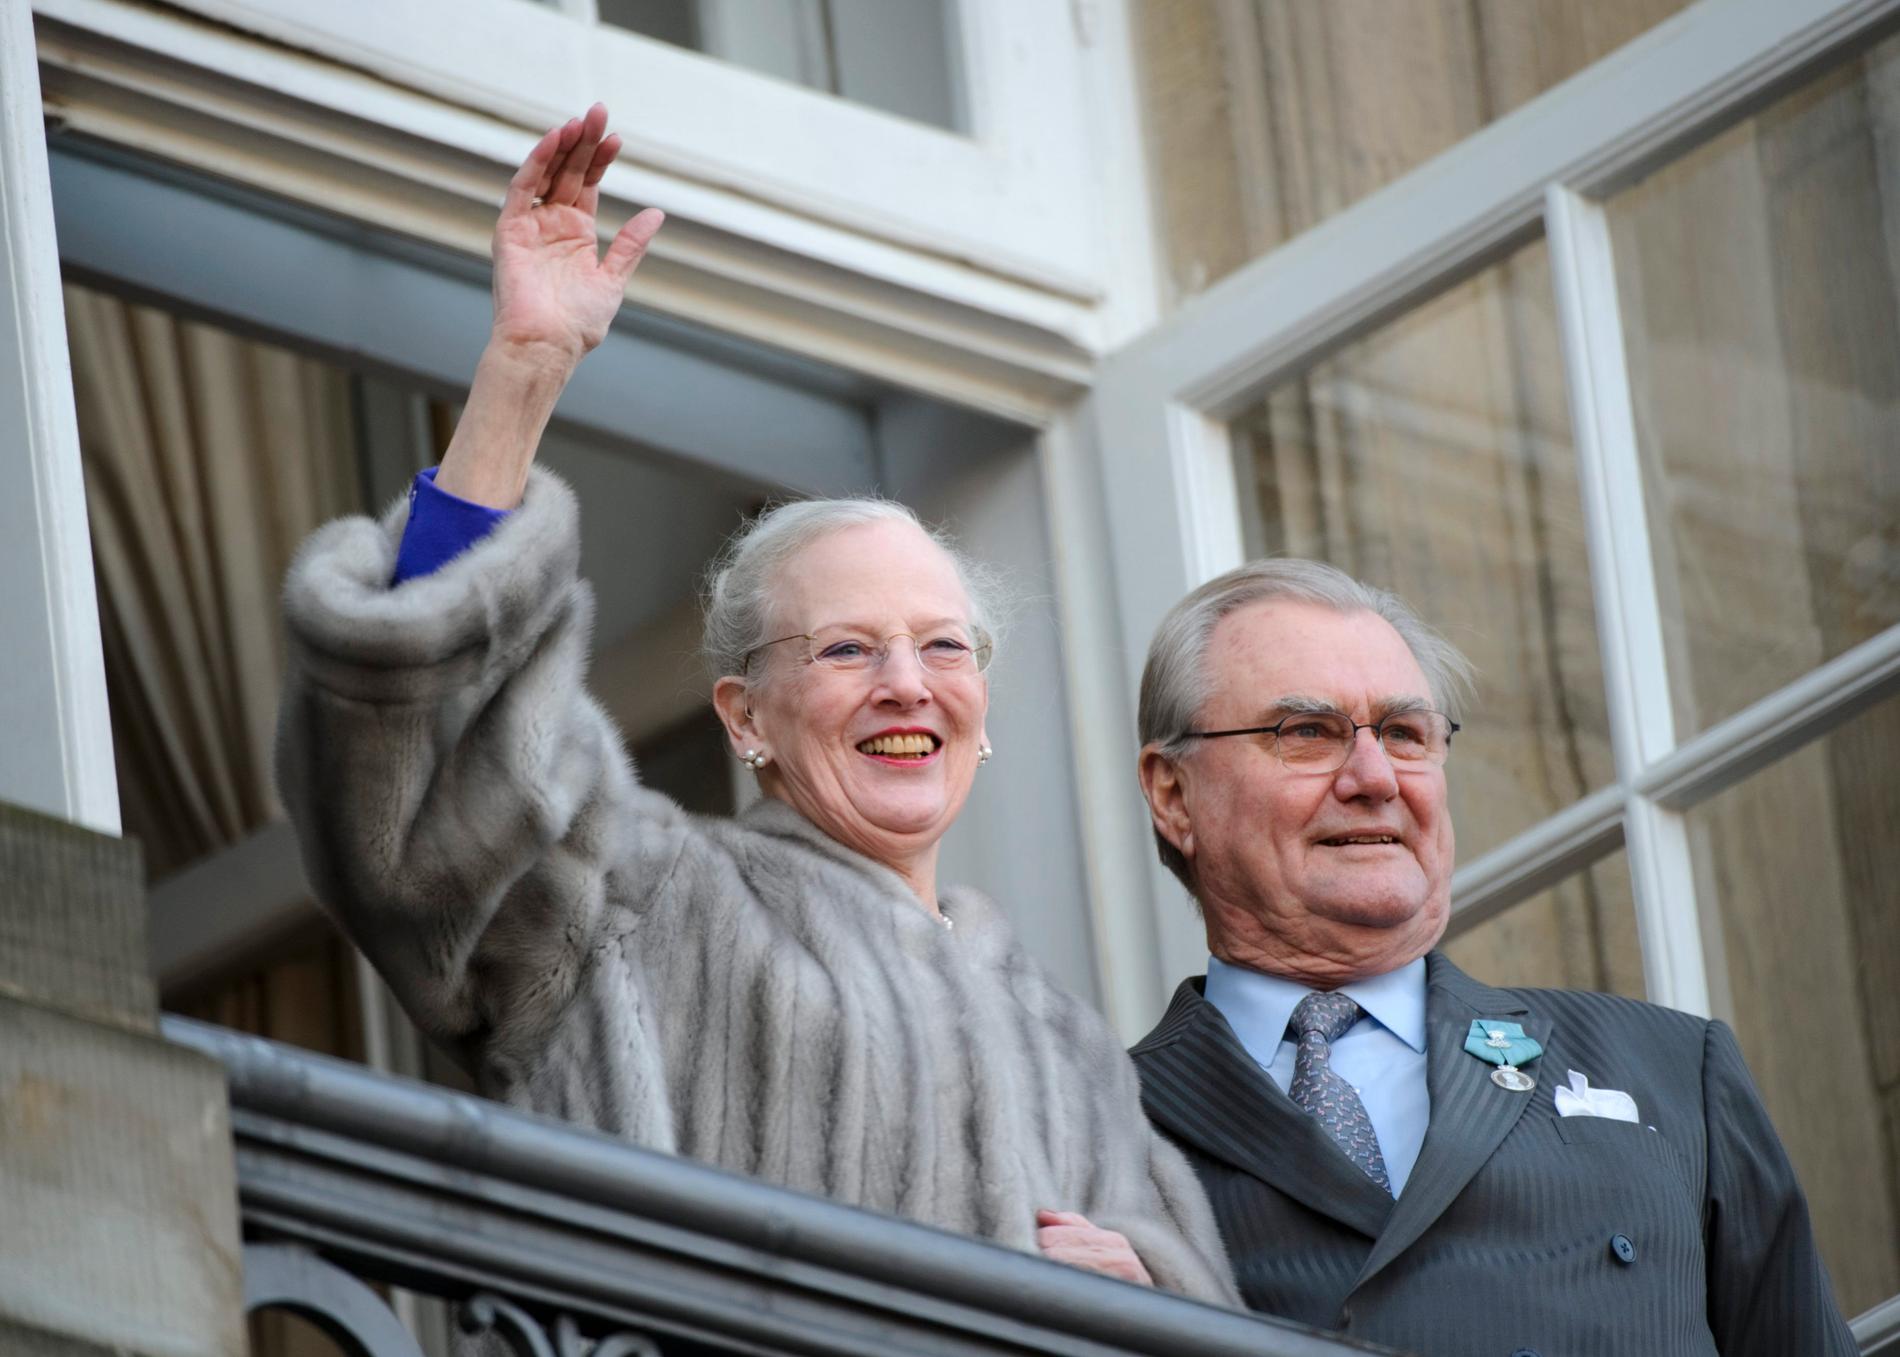 Drottning Margrethe II och prins Henrik vinkar till folket från balkongen till Christian IX:s palats vid Amalienborg slotsplads, med anledning av drottning Margrethes 40-årsjubileum vid tronen